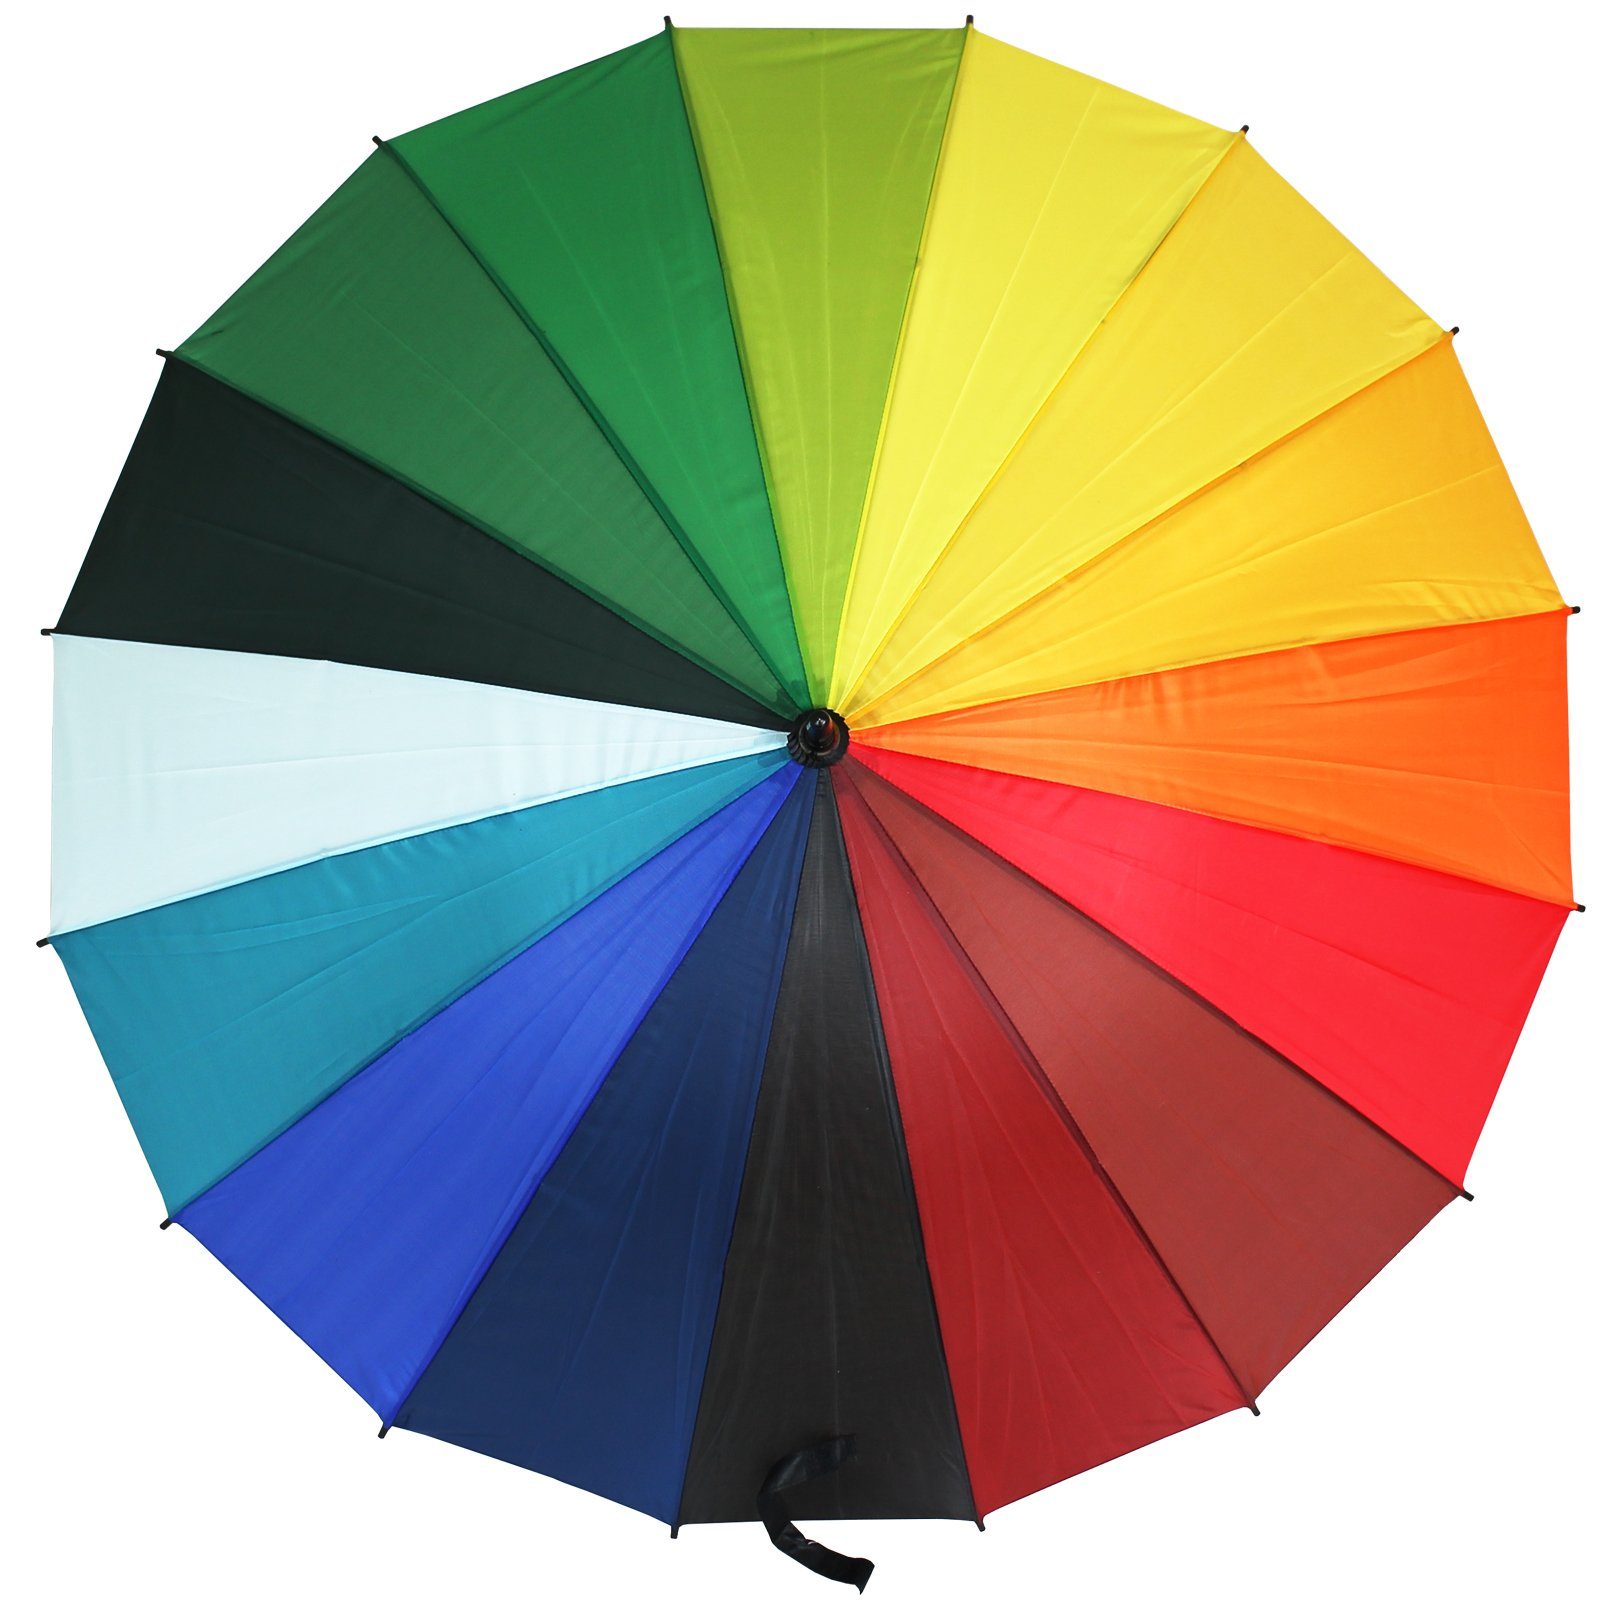 Stockschirm, Farben Golfschirm Stock-Schirm Schirm Koopman 16 Regen Regenbogen Schirm Stockregenschirm Regenschirm